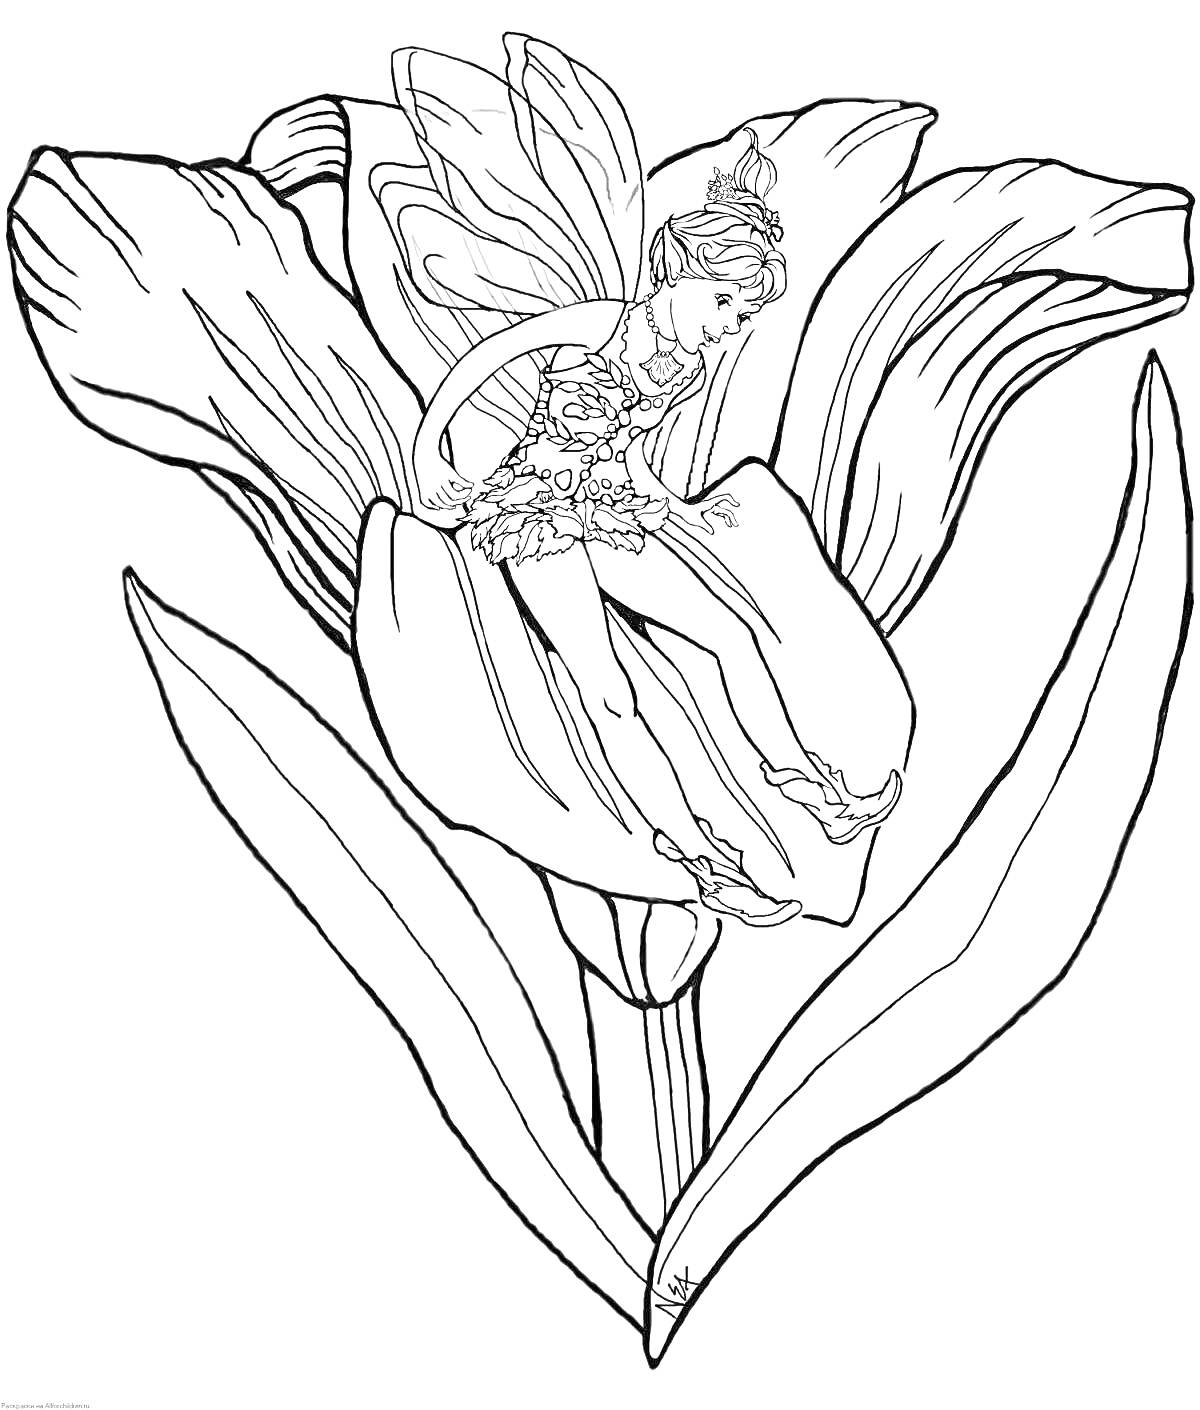 Раскраска Фея на цветке лилии